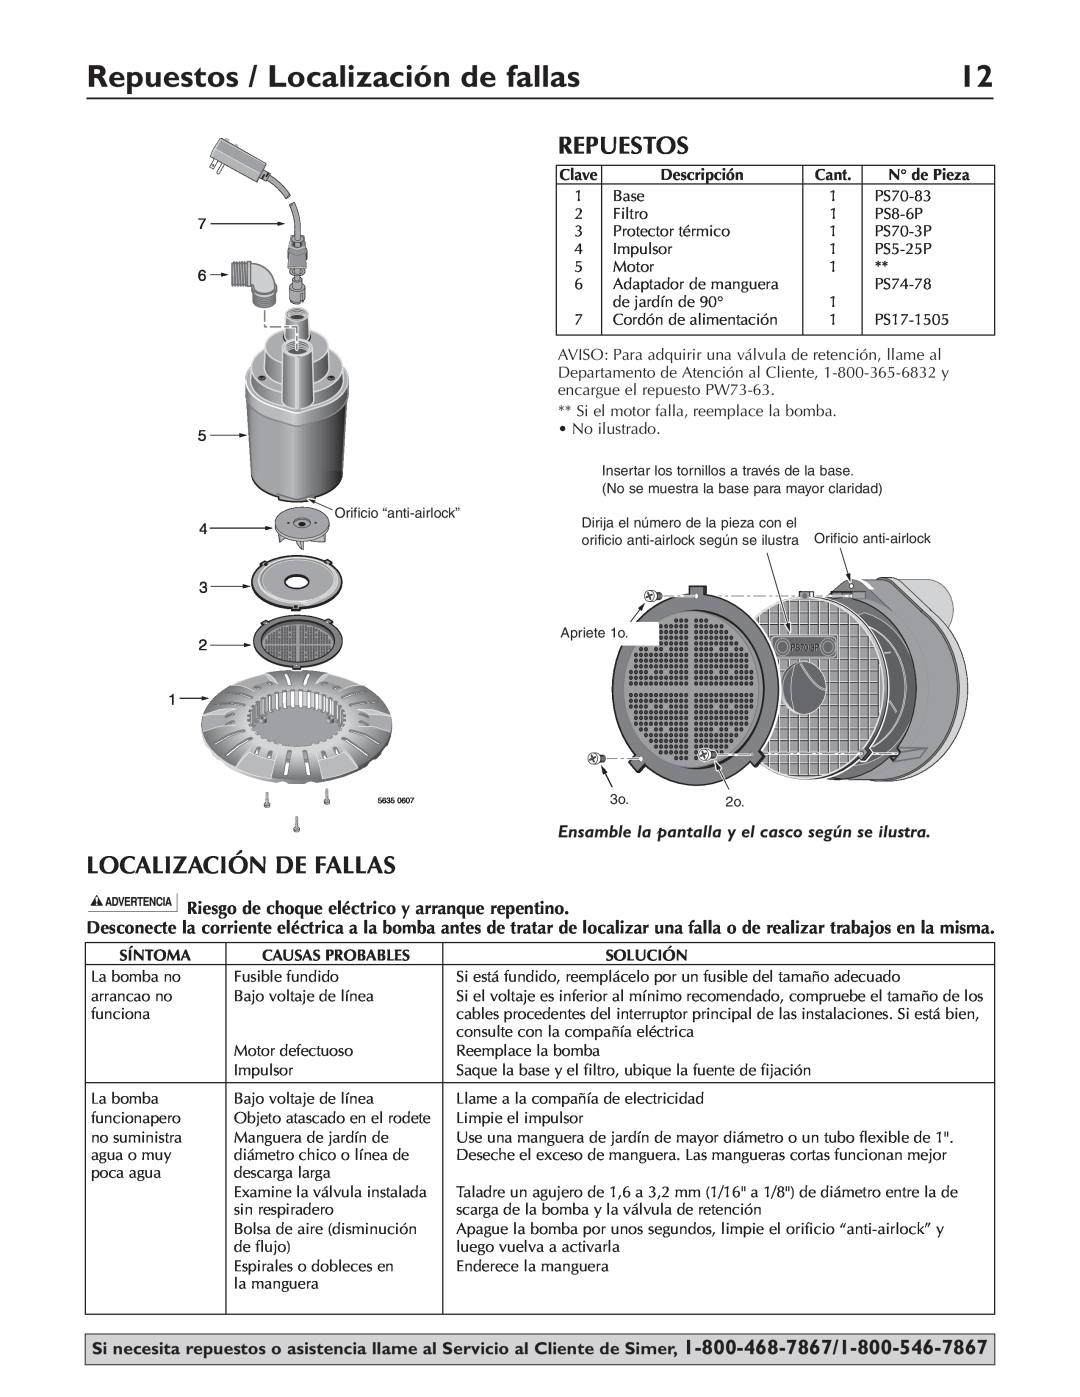 Simer Pumps 2115 Repuestos / Localización de fallas, Localización De Fallas, OrificioAnti-Airloc“anti-airlock” 4 Hole 